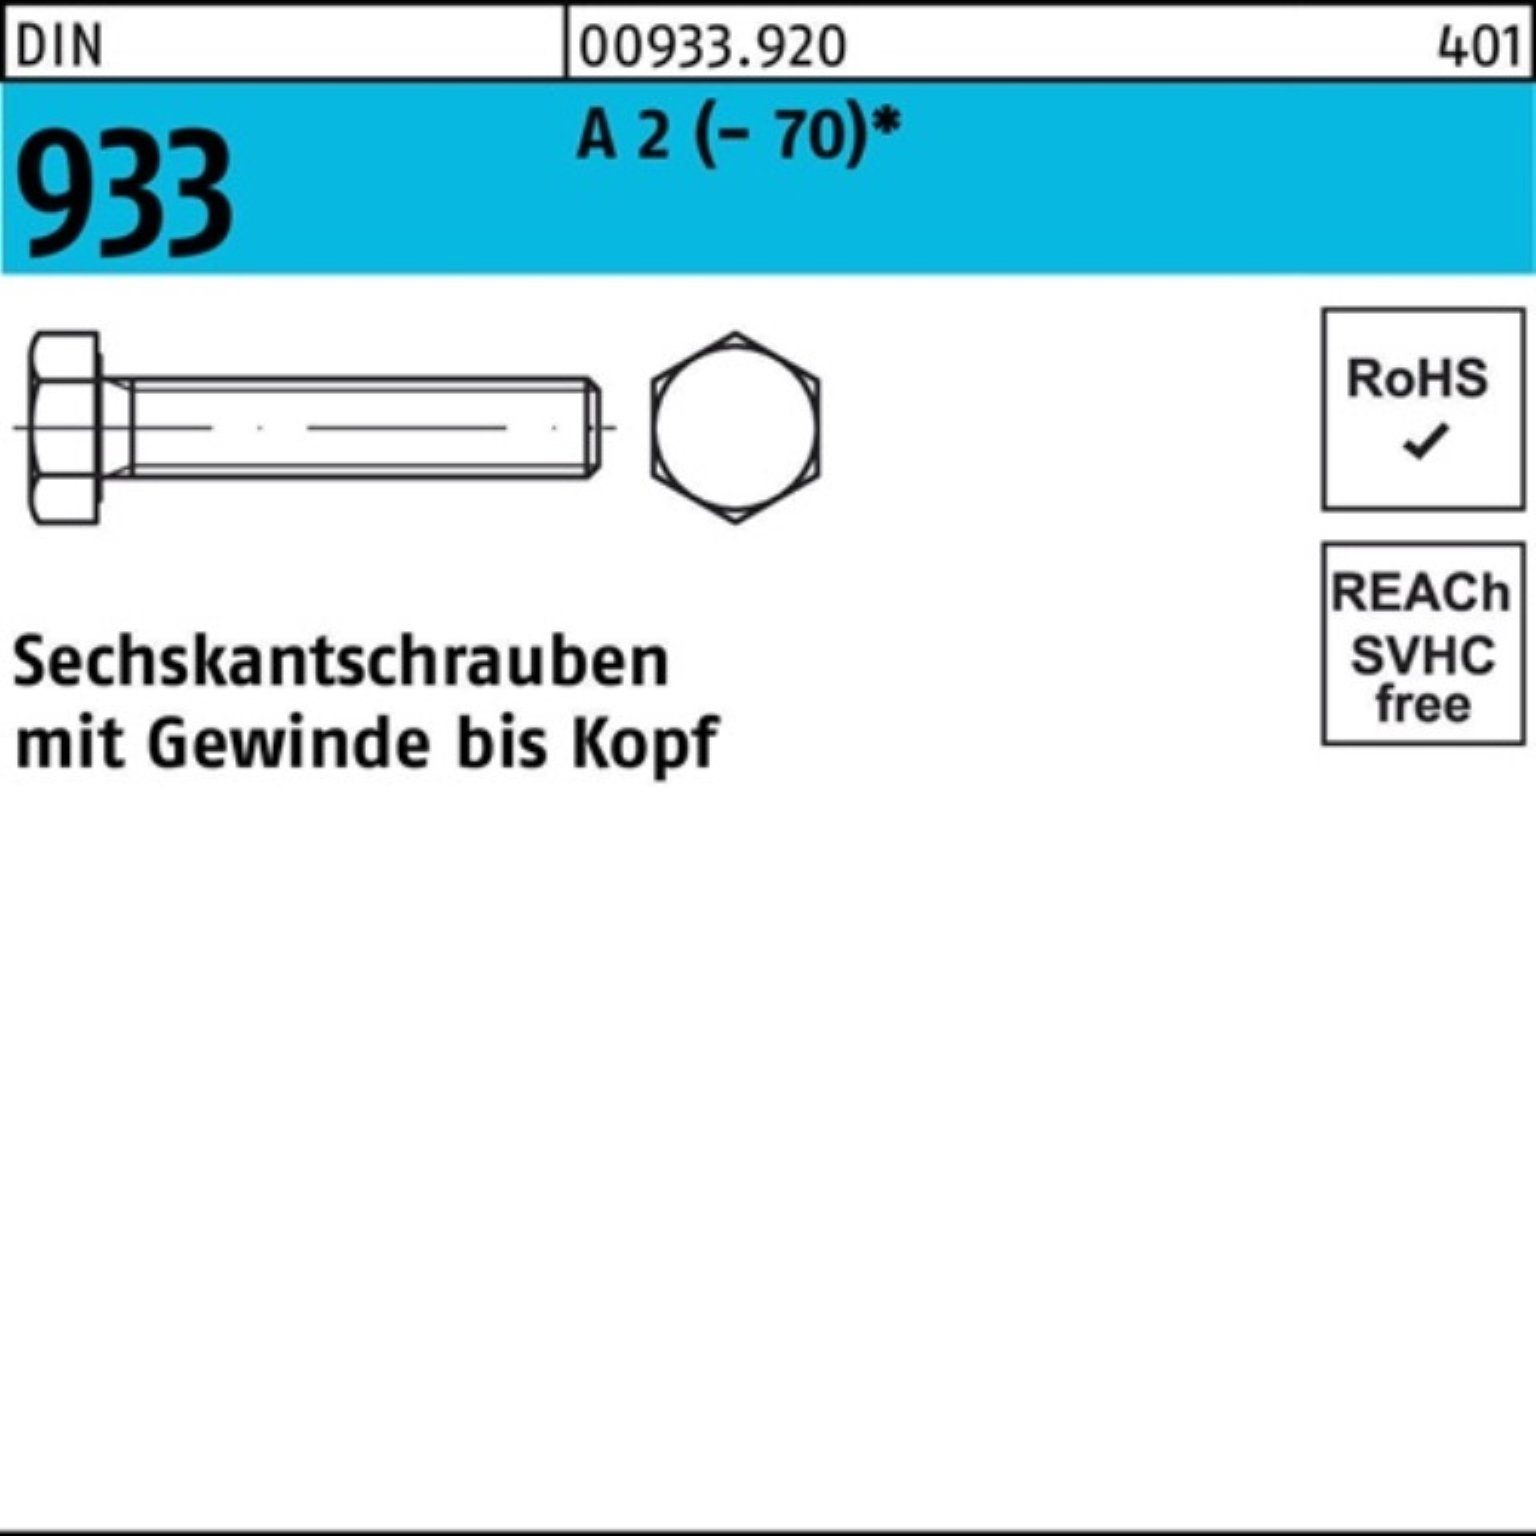 Reyher Sechskantschraube 200er Pack Sechskantschraube DIN 933 VG M8x 12 A 2 (70) 200 Stück D